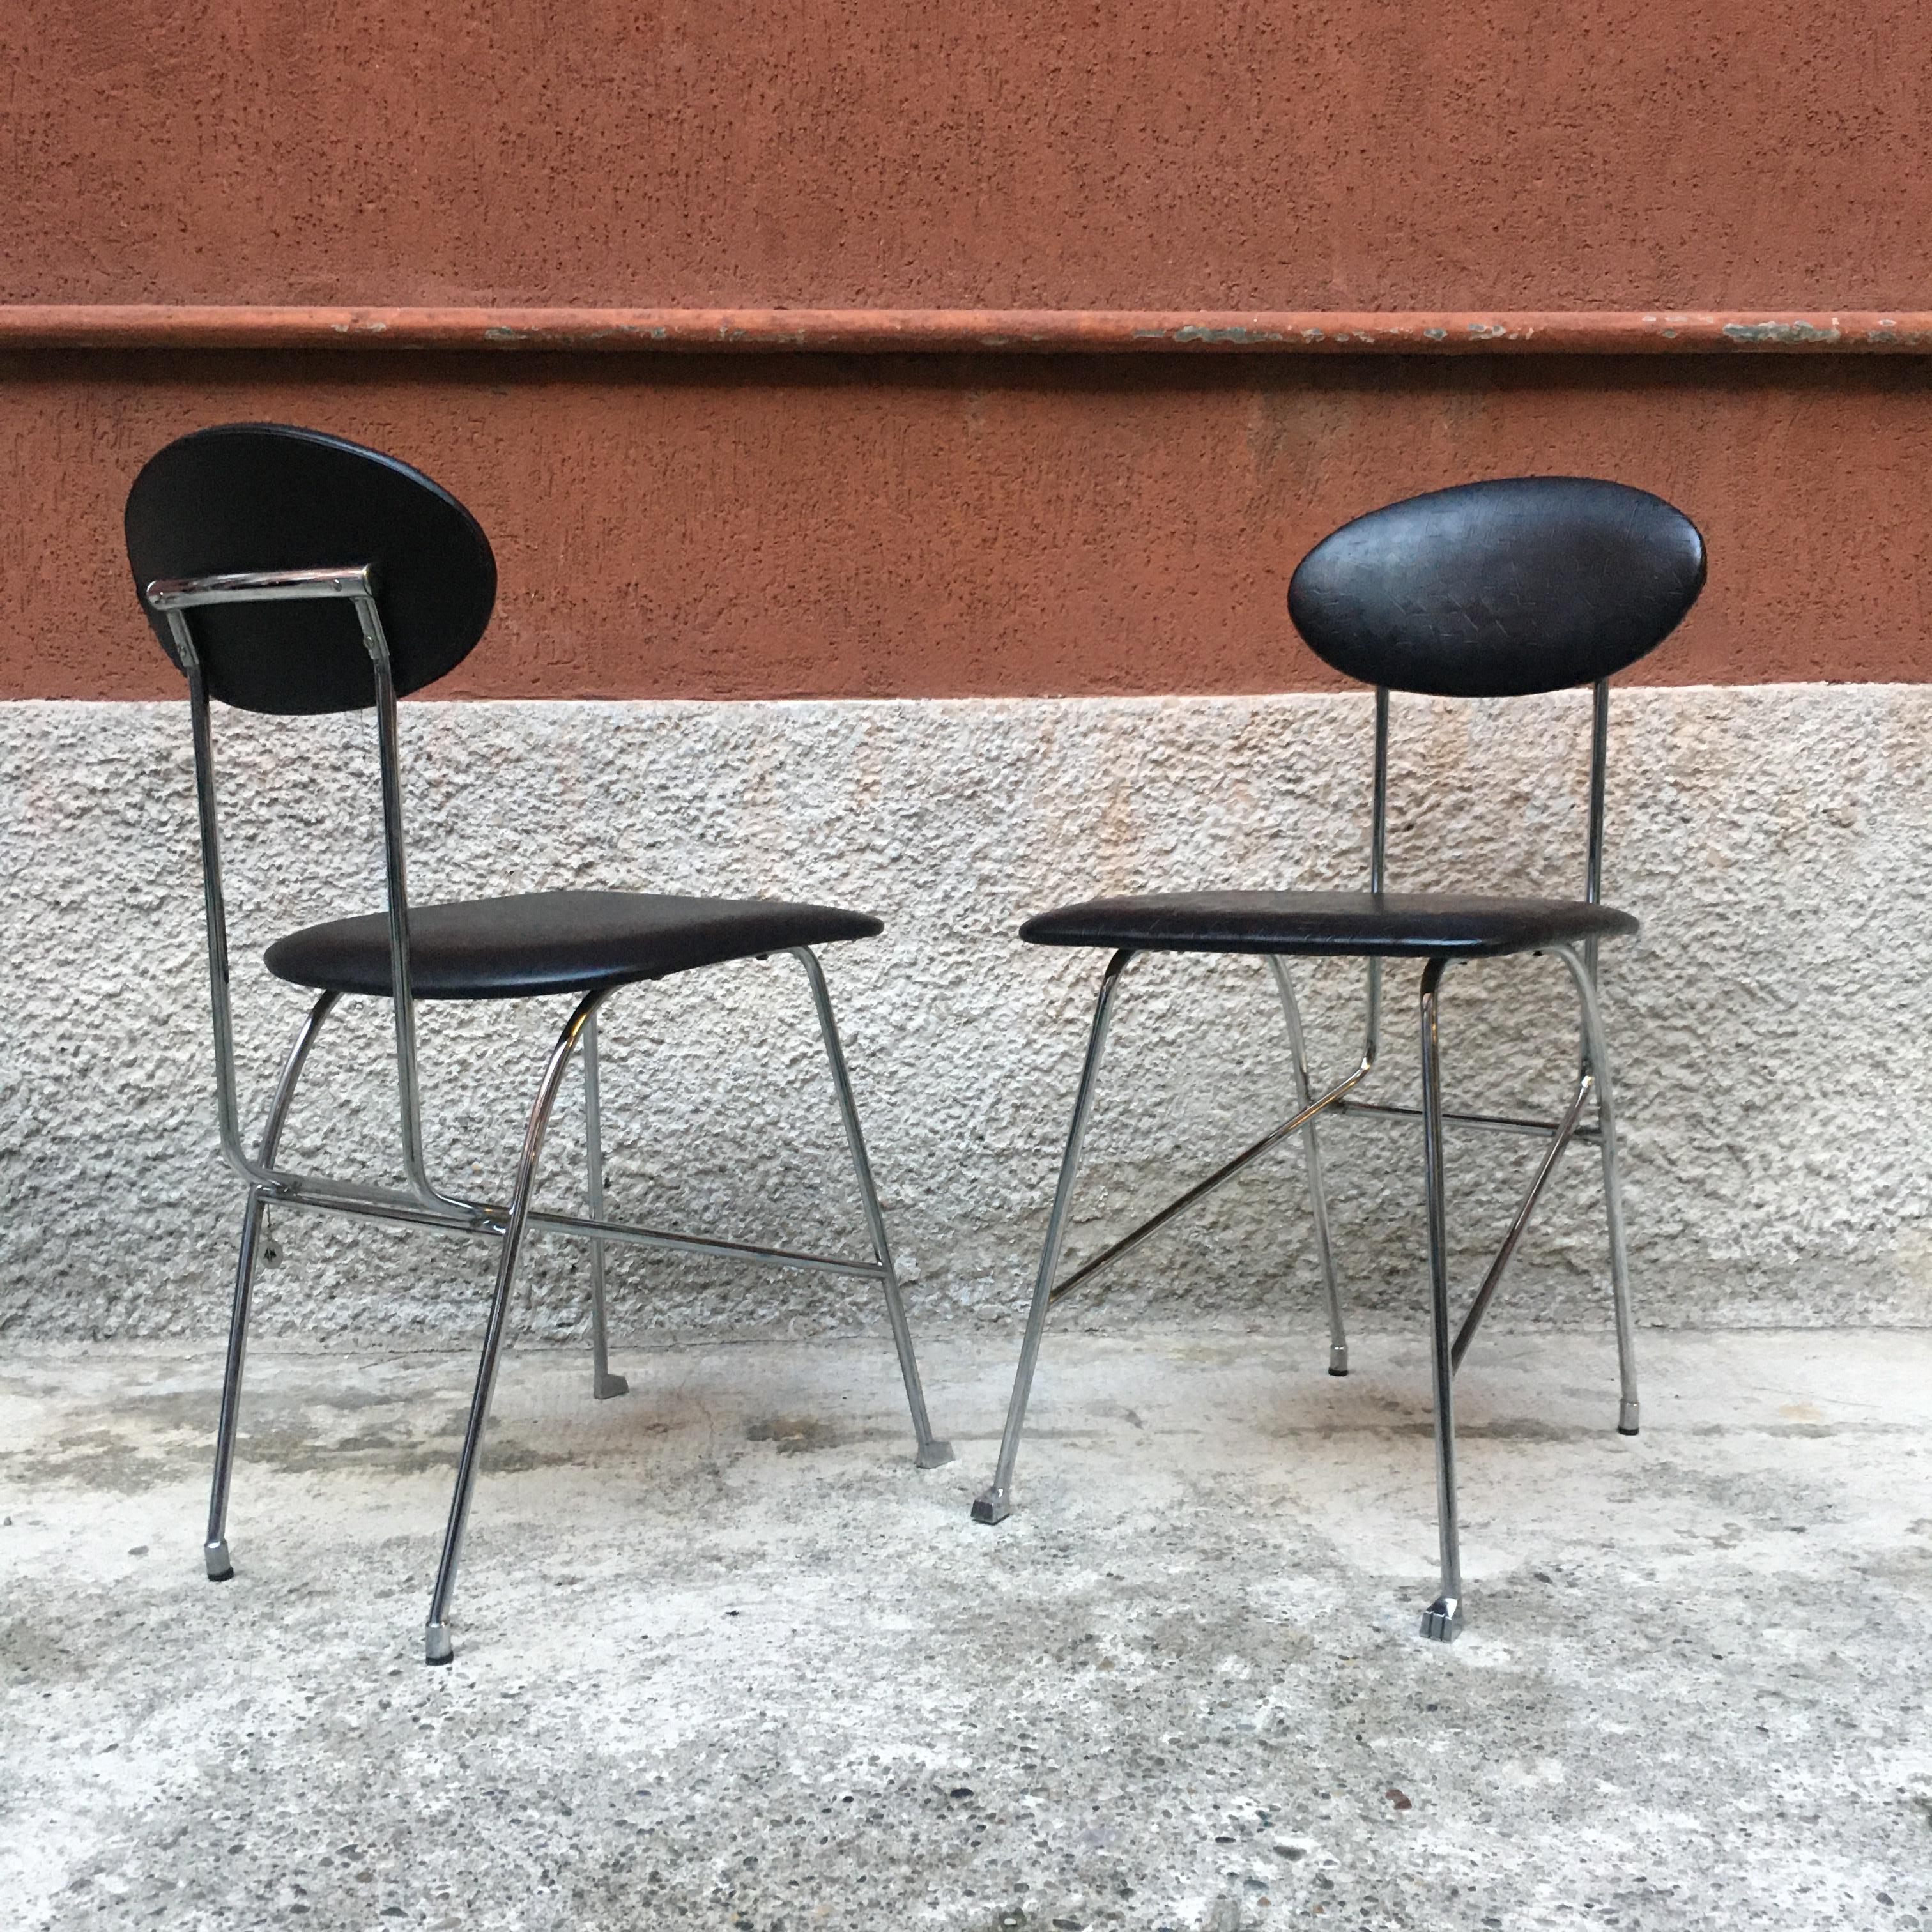 Italienischer verchromter Metallstuhl mit Lederbezug von Mendini für Zabro, 1980er Jahre
Stuhl mit verchromtem Metallgestell, mit eleganter Fußkappe und Sitz und Rückenlehne aus schwarzem Leder, entworfen von Alessandro Mendini für Zabro.
Auf